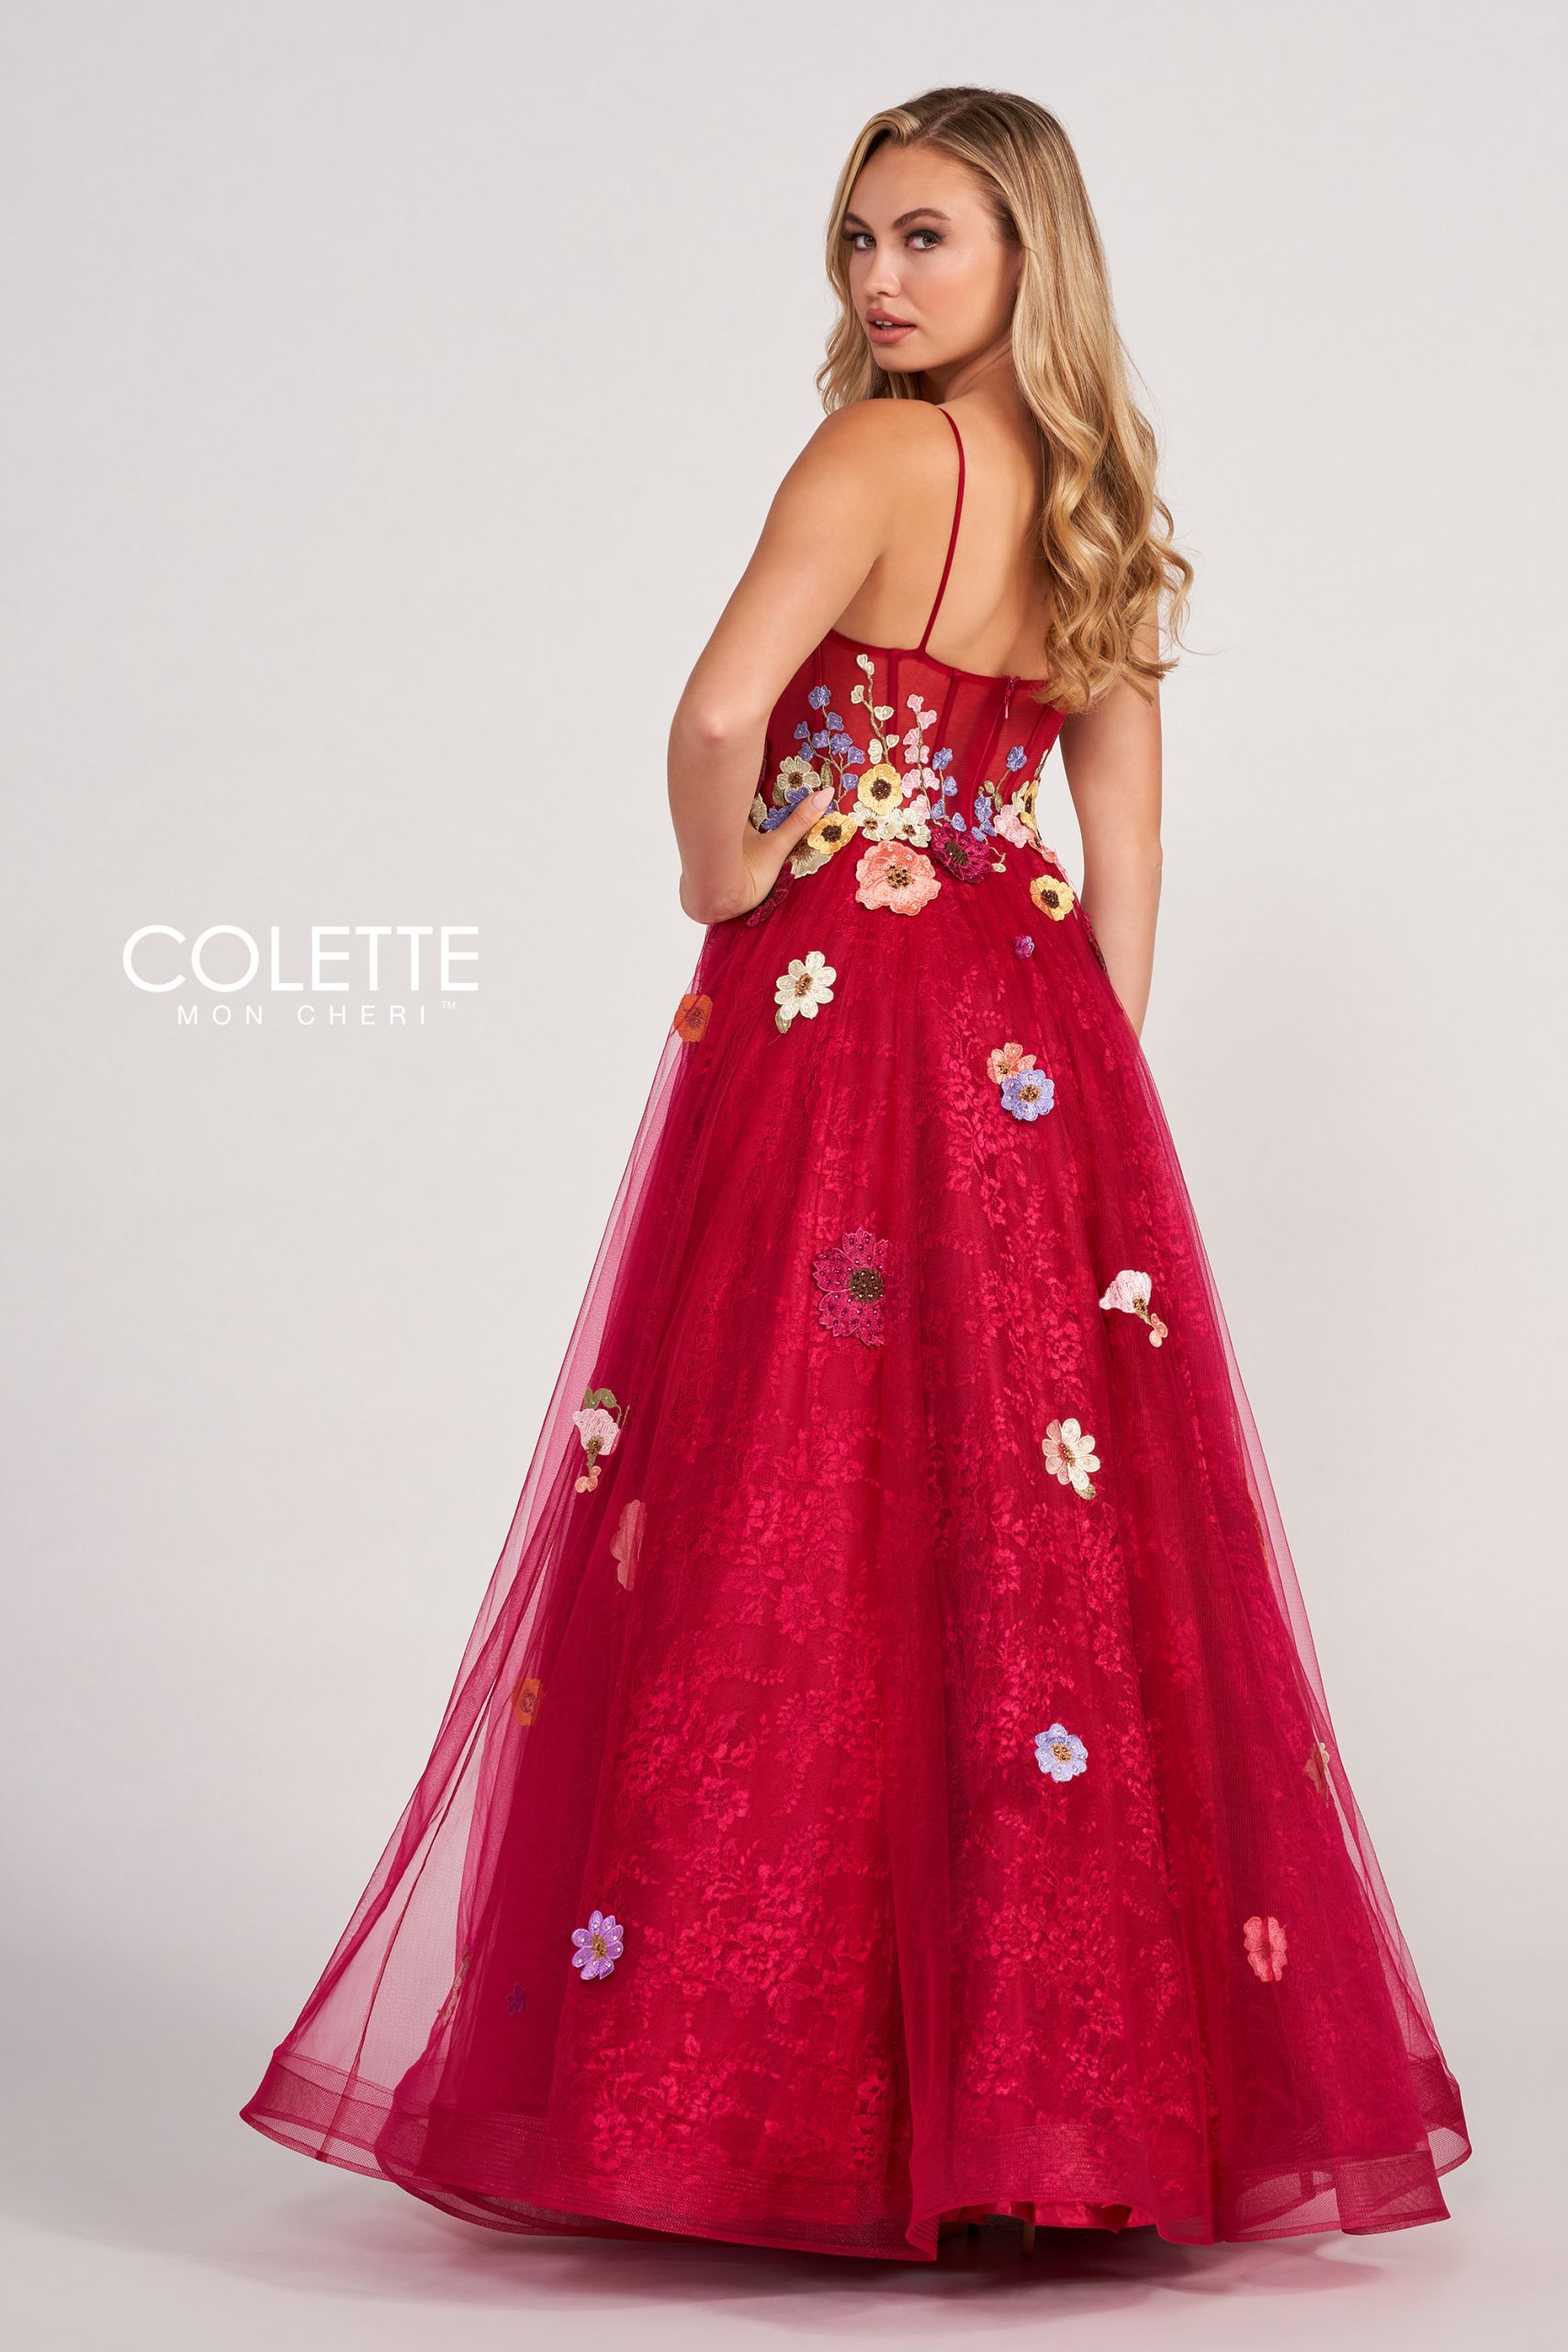 CL2086 - Colette dresses available at Lisa's Bridal Salon